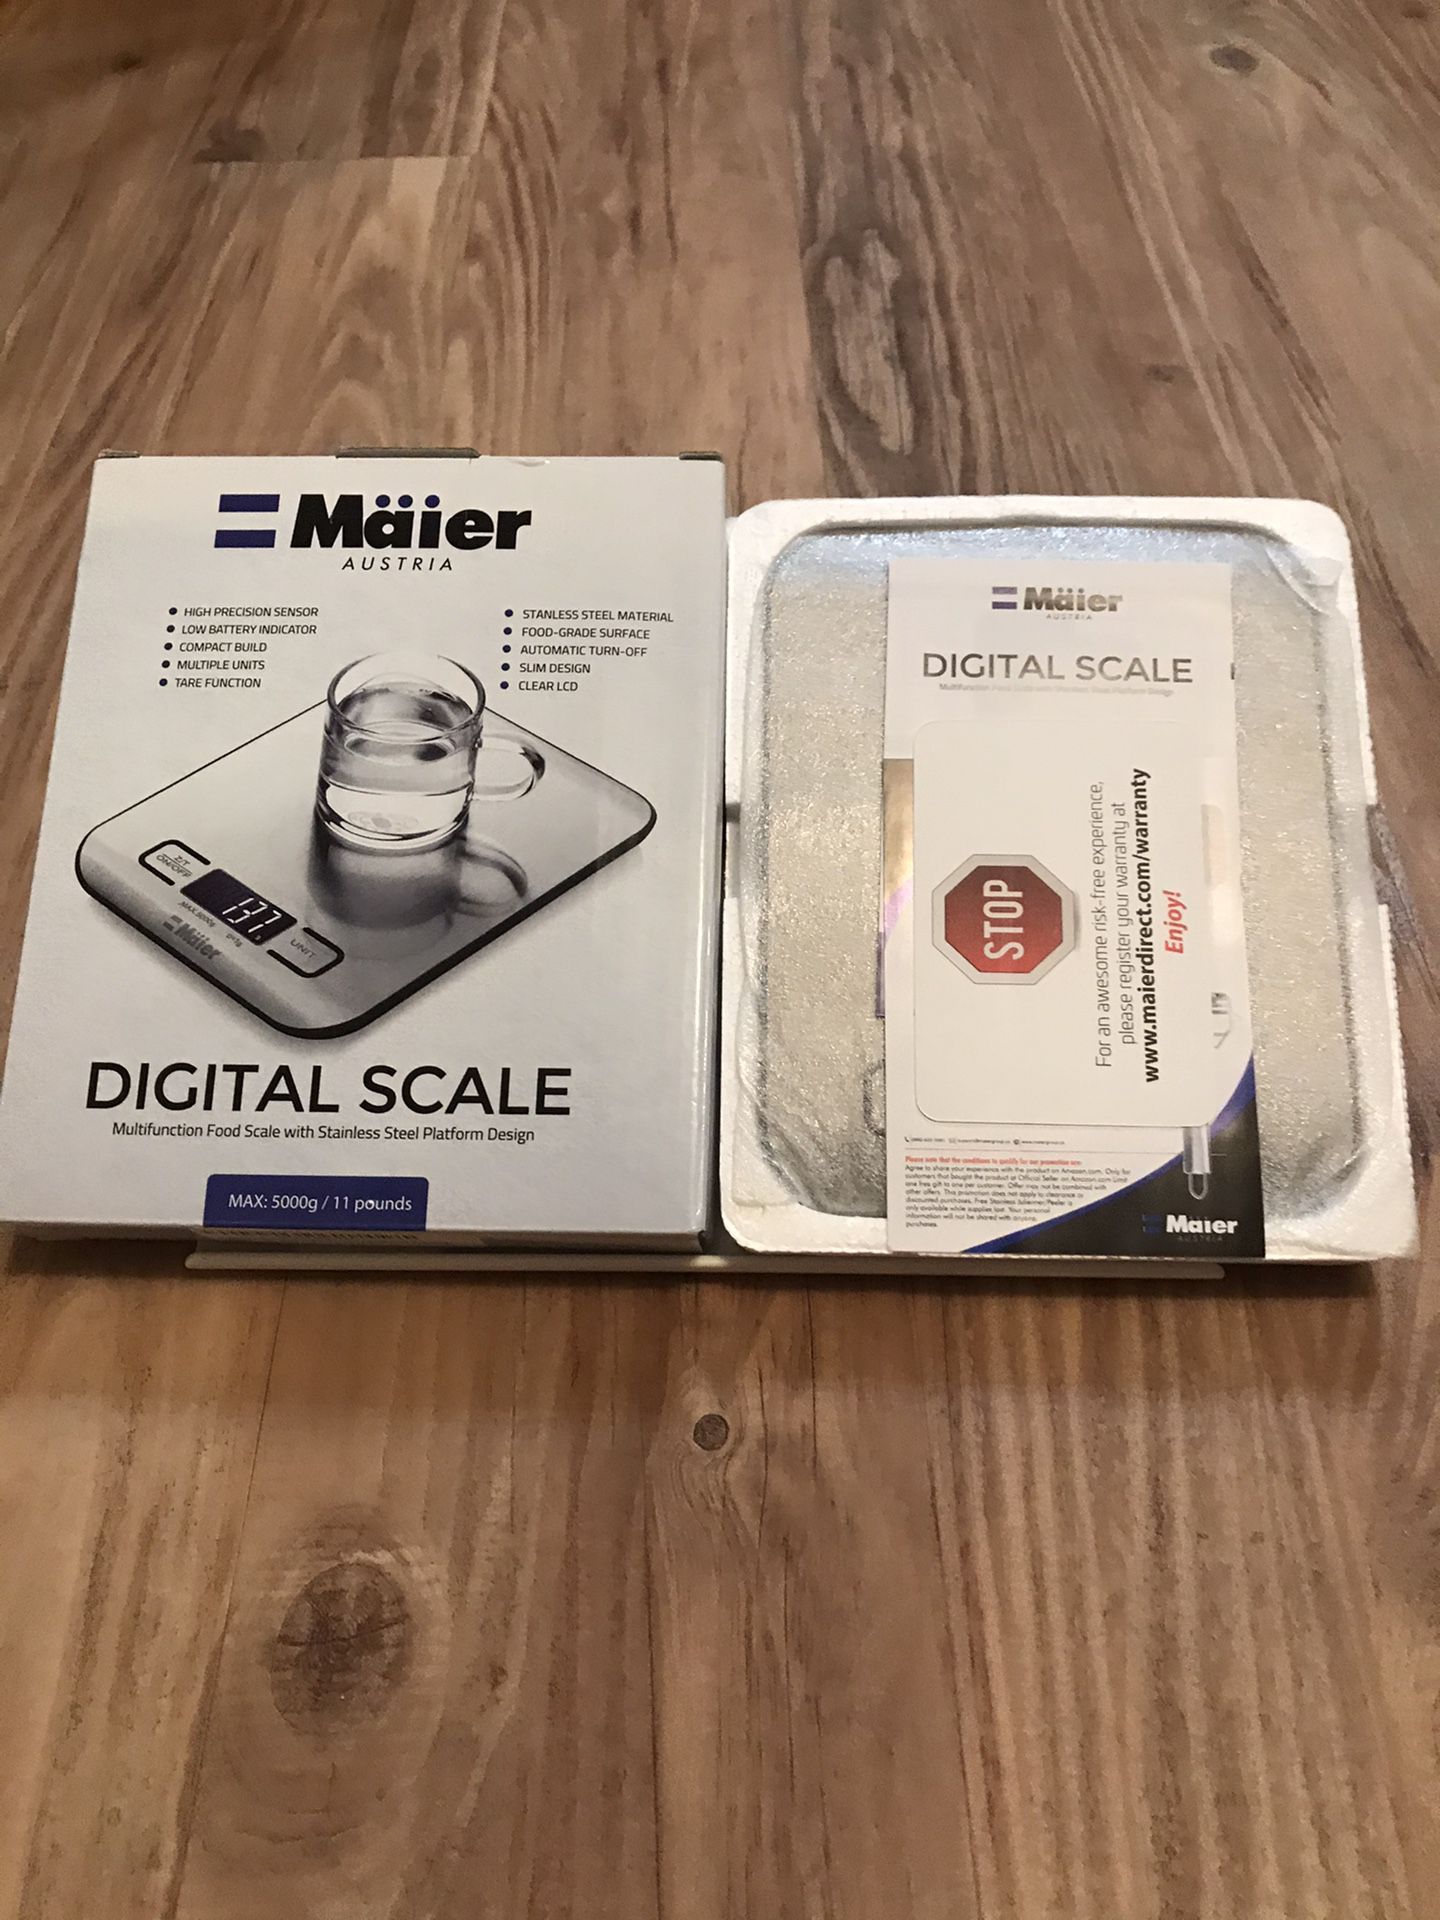 Maier Austria Digital Scale NIB